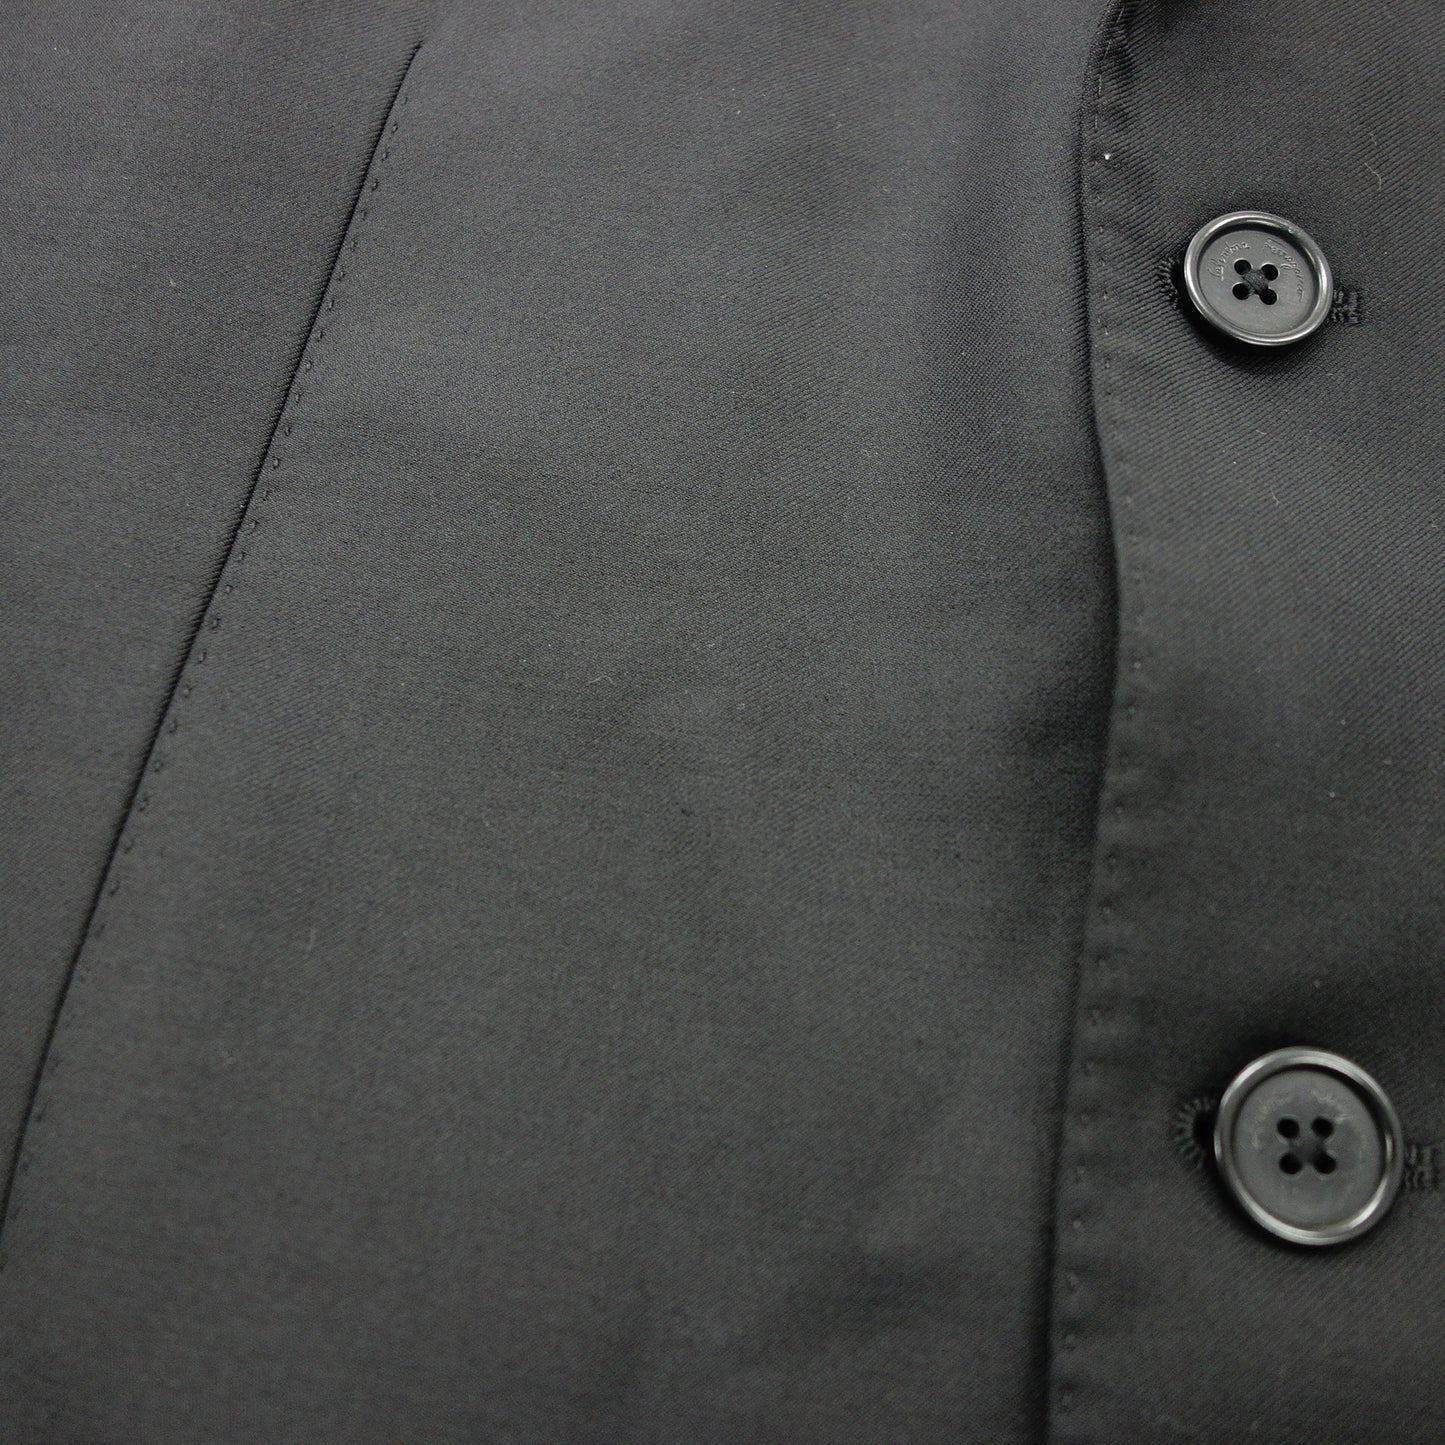 Salvatore Ferragamo Tailored Jacket 3B Men's Black 48 Salvatore Ferragamo [AFB18] [Used] 